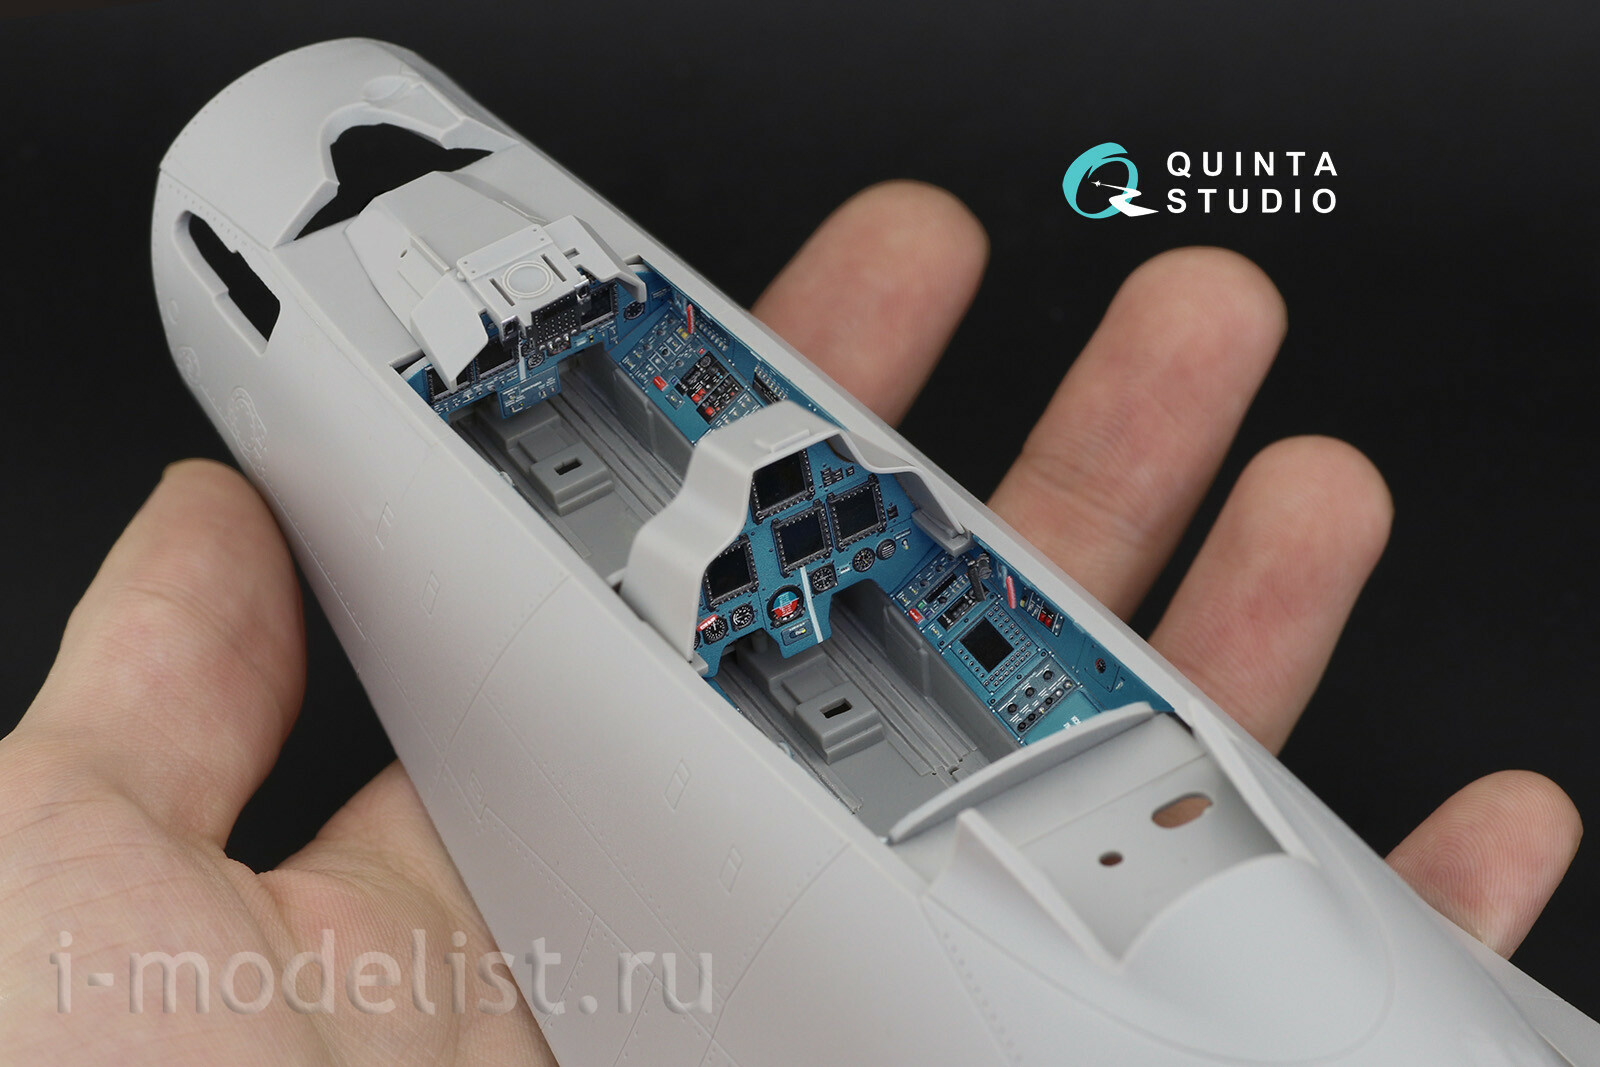 QDS-32095 Quinta Studio 1/32 3D Декаль интерьера кабины Суххой-30СМ (конверсия для HobbyBoss Суххой-30МКК) (Small version)